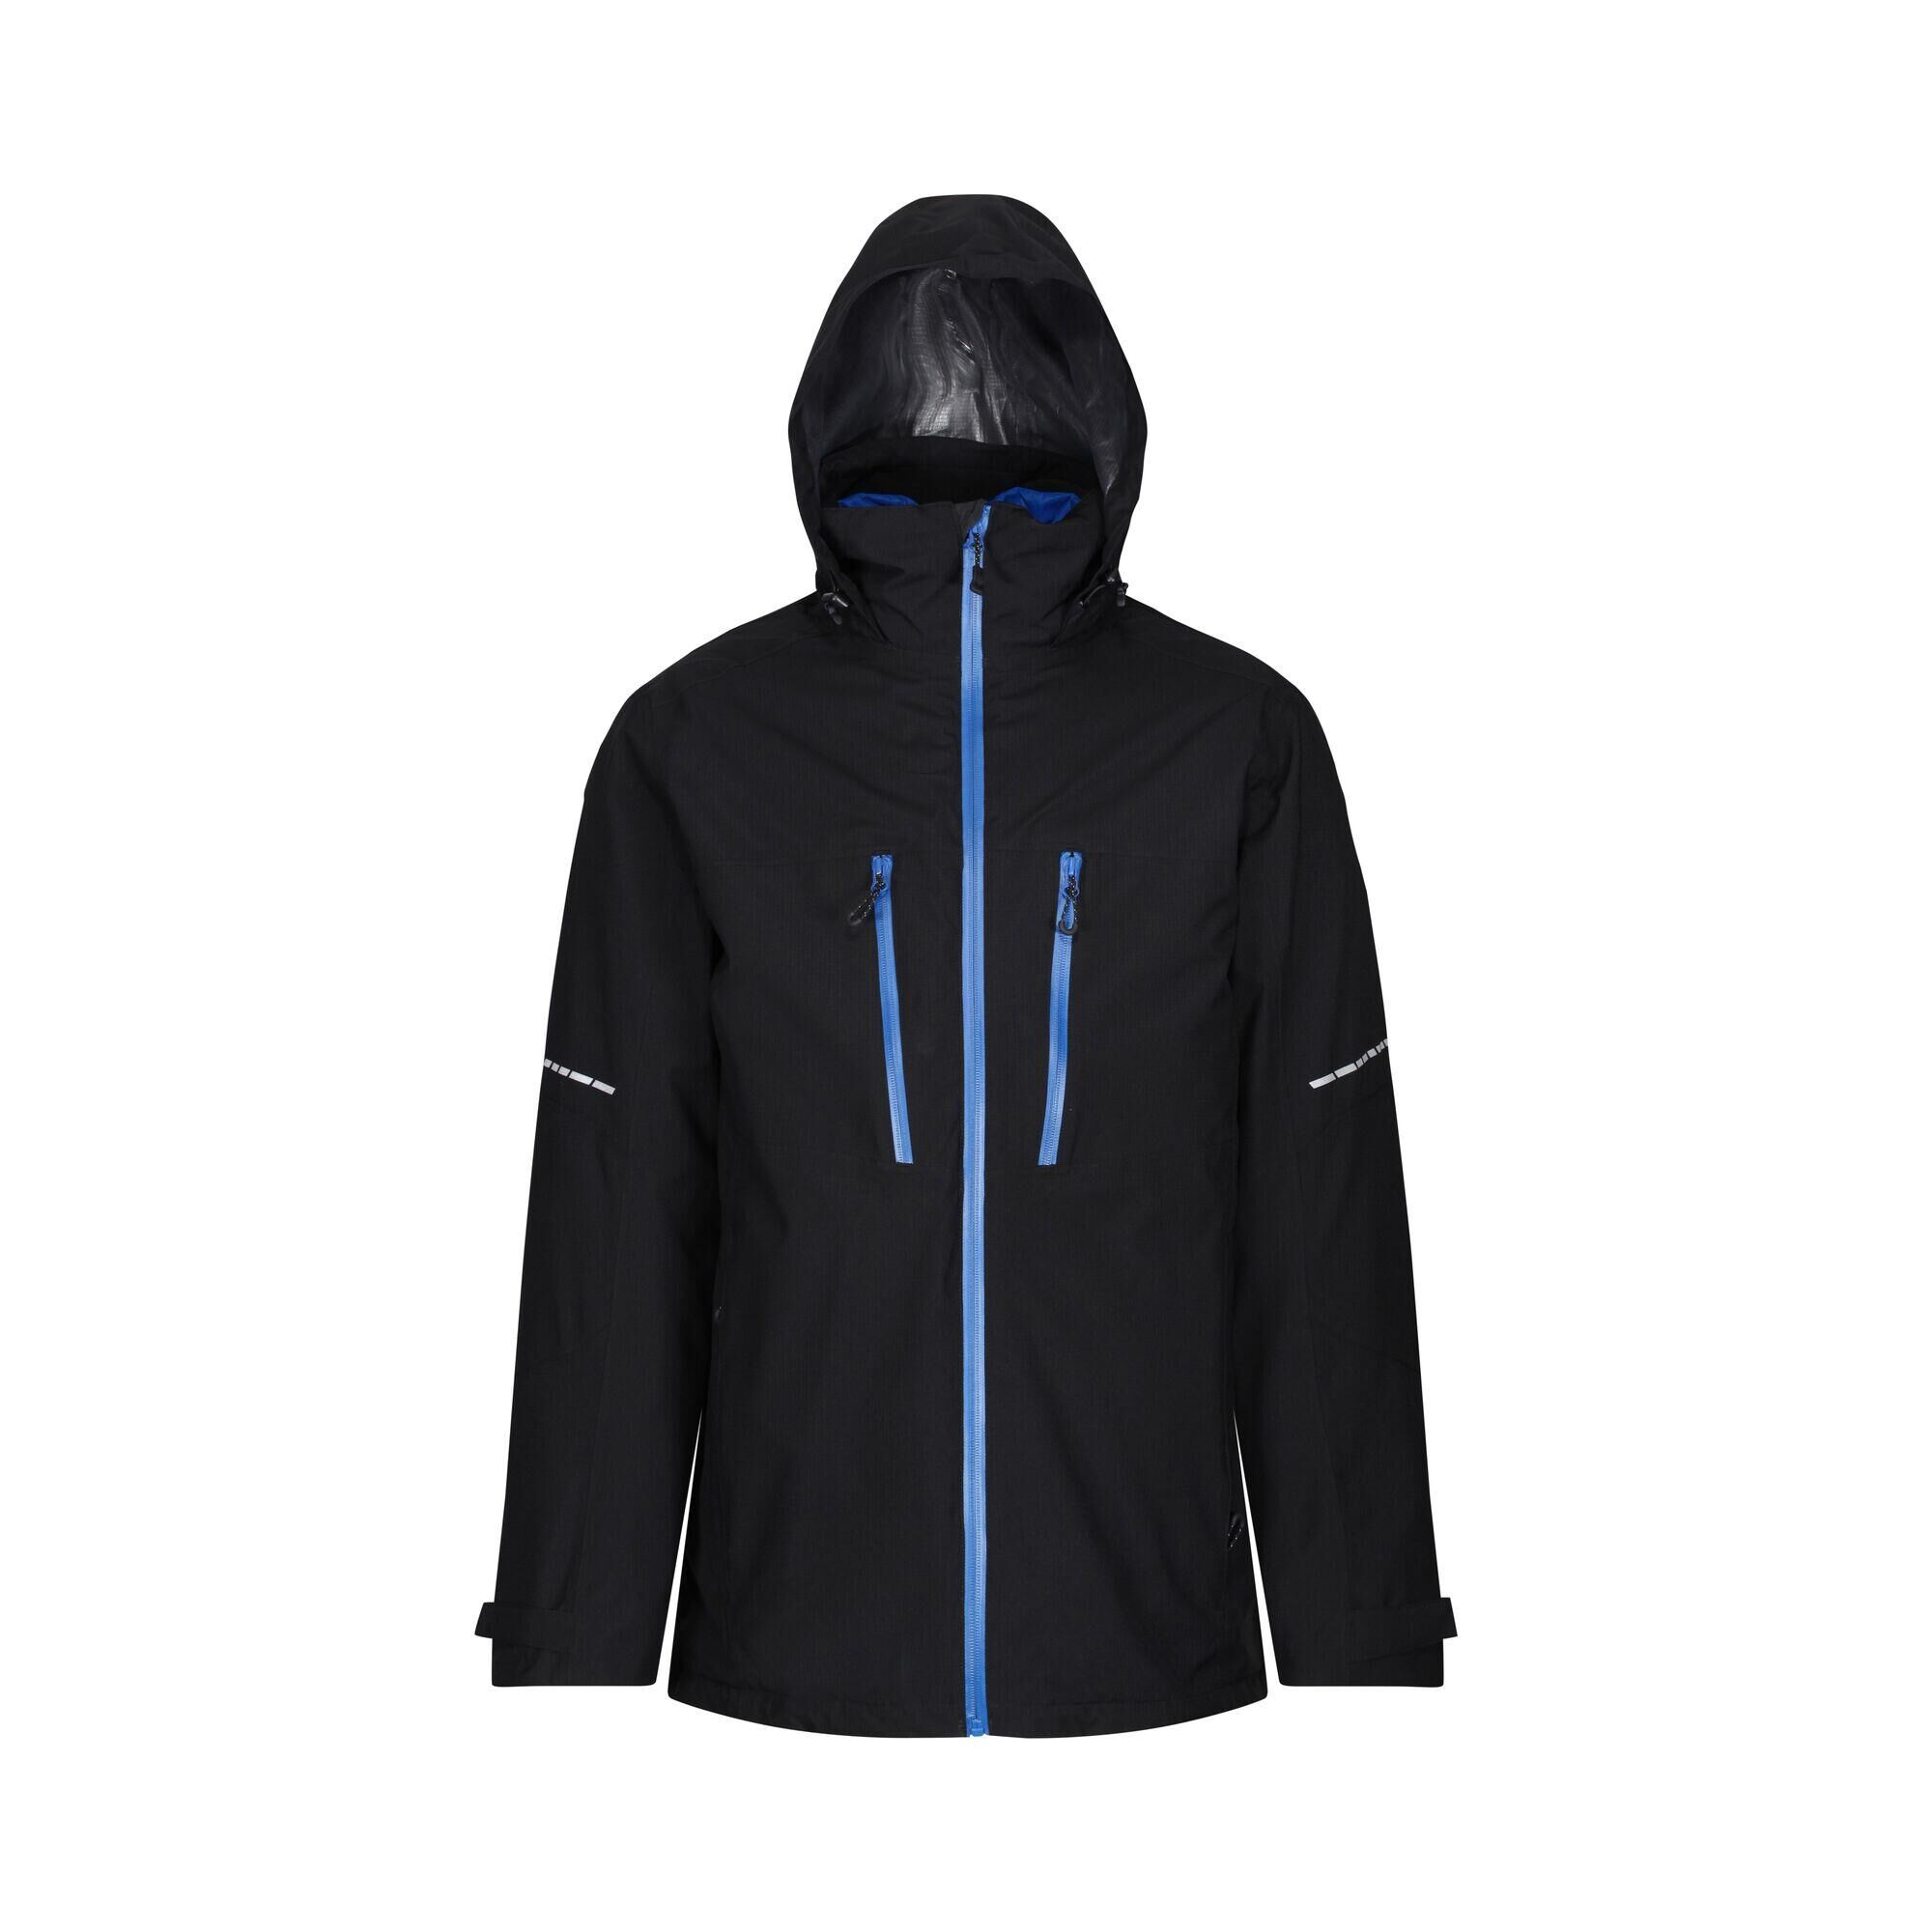 REGATTA Evader III Men's Hiking 3 in 1 Waterproof Jacket - Black/Blue